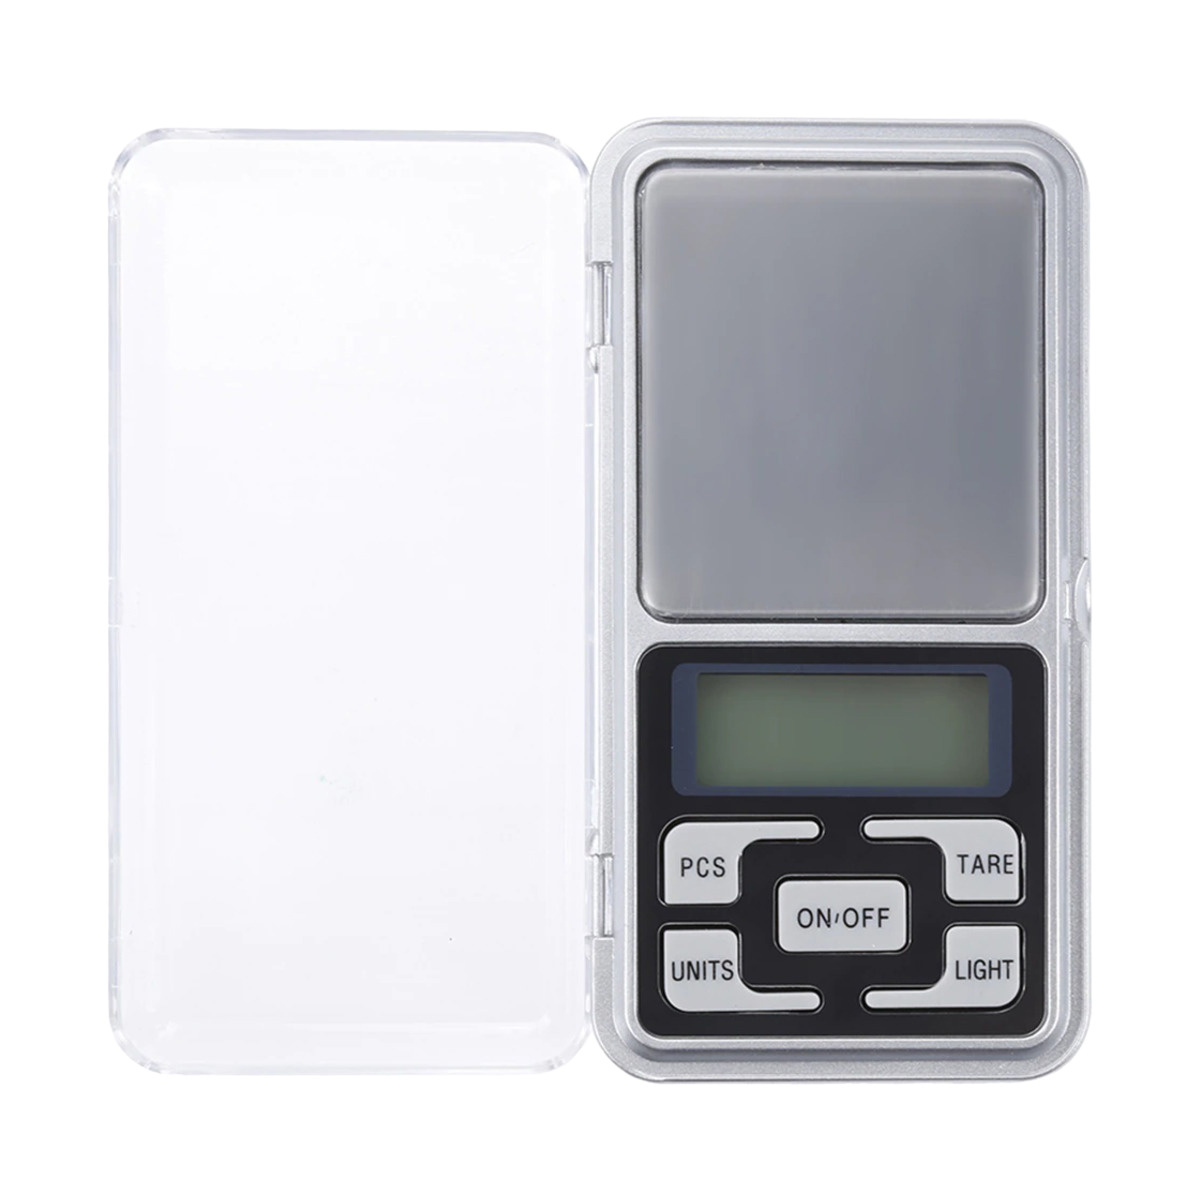 NoXx Digitale Precisie Keukenweegschaal Pocket Weegschaal Tarra- en Telfunctie 0,01 - 200 gram